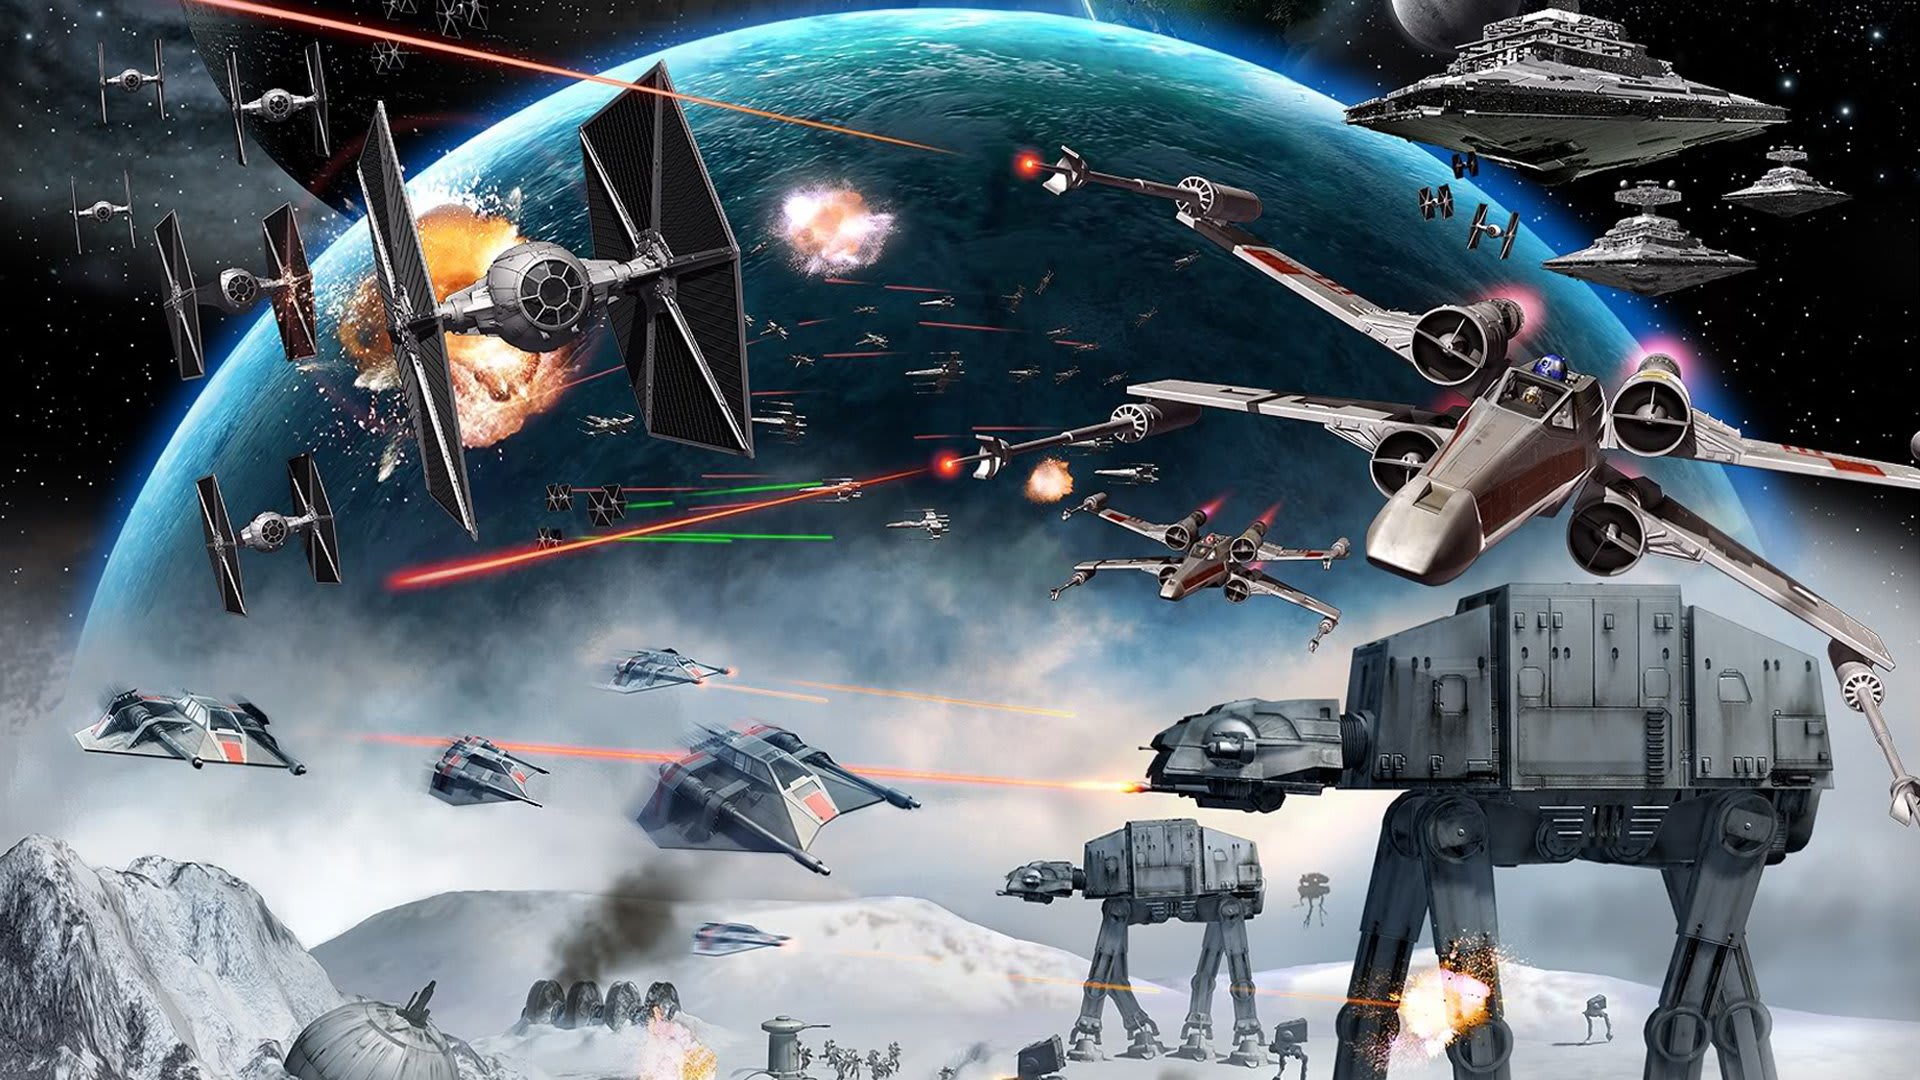 Coolest 'Star Wars' Spaceships | Futurism